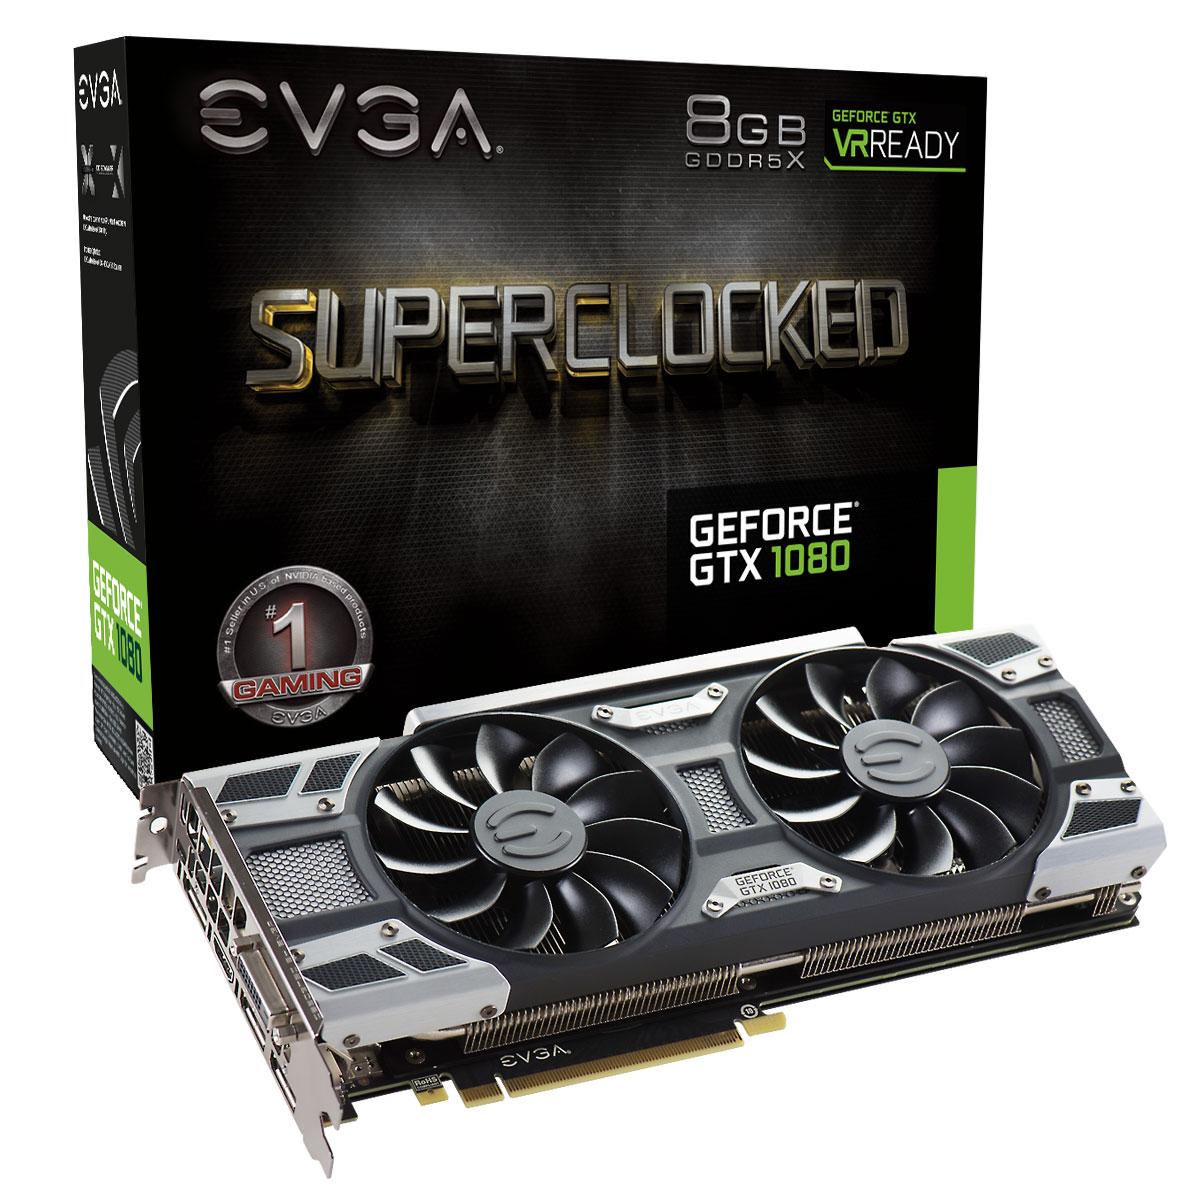 EVGA GeForce GTX 1080 8 GB SC Gaming